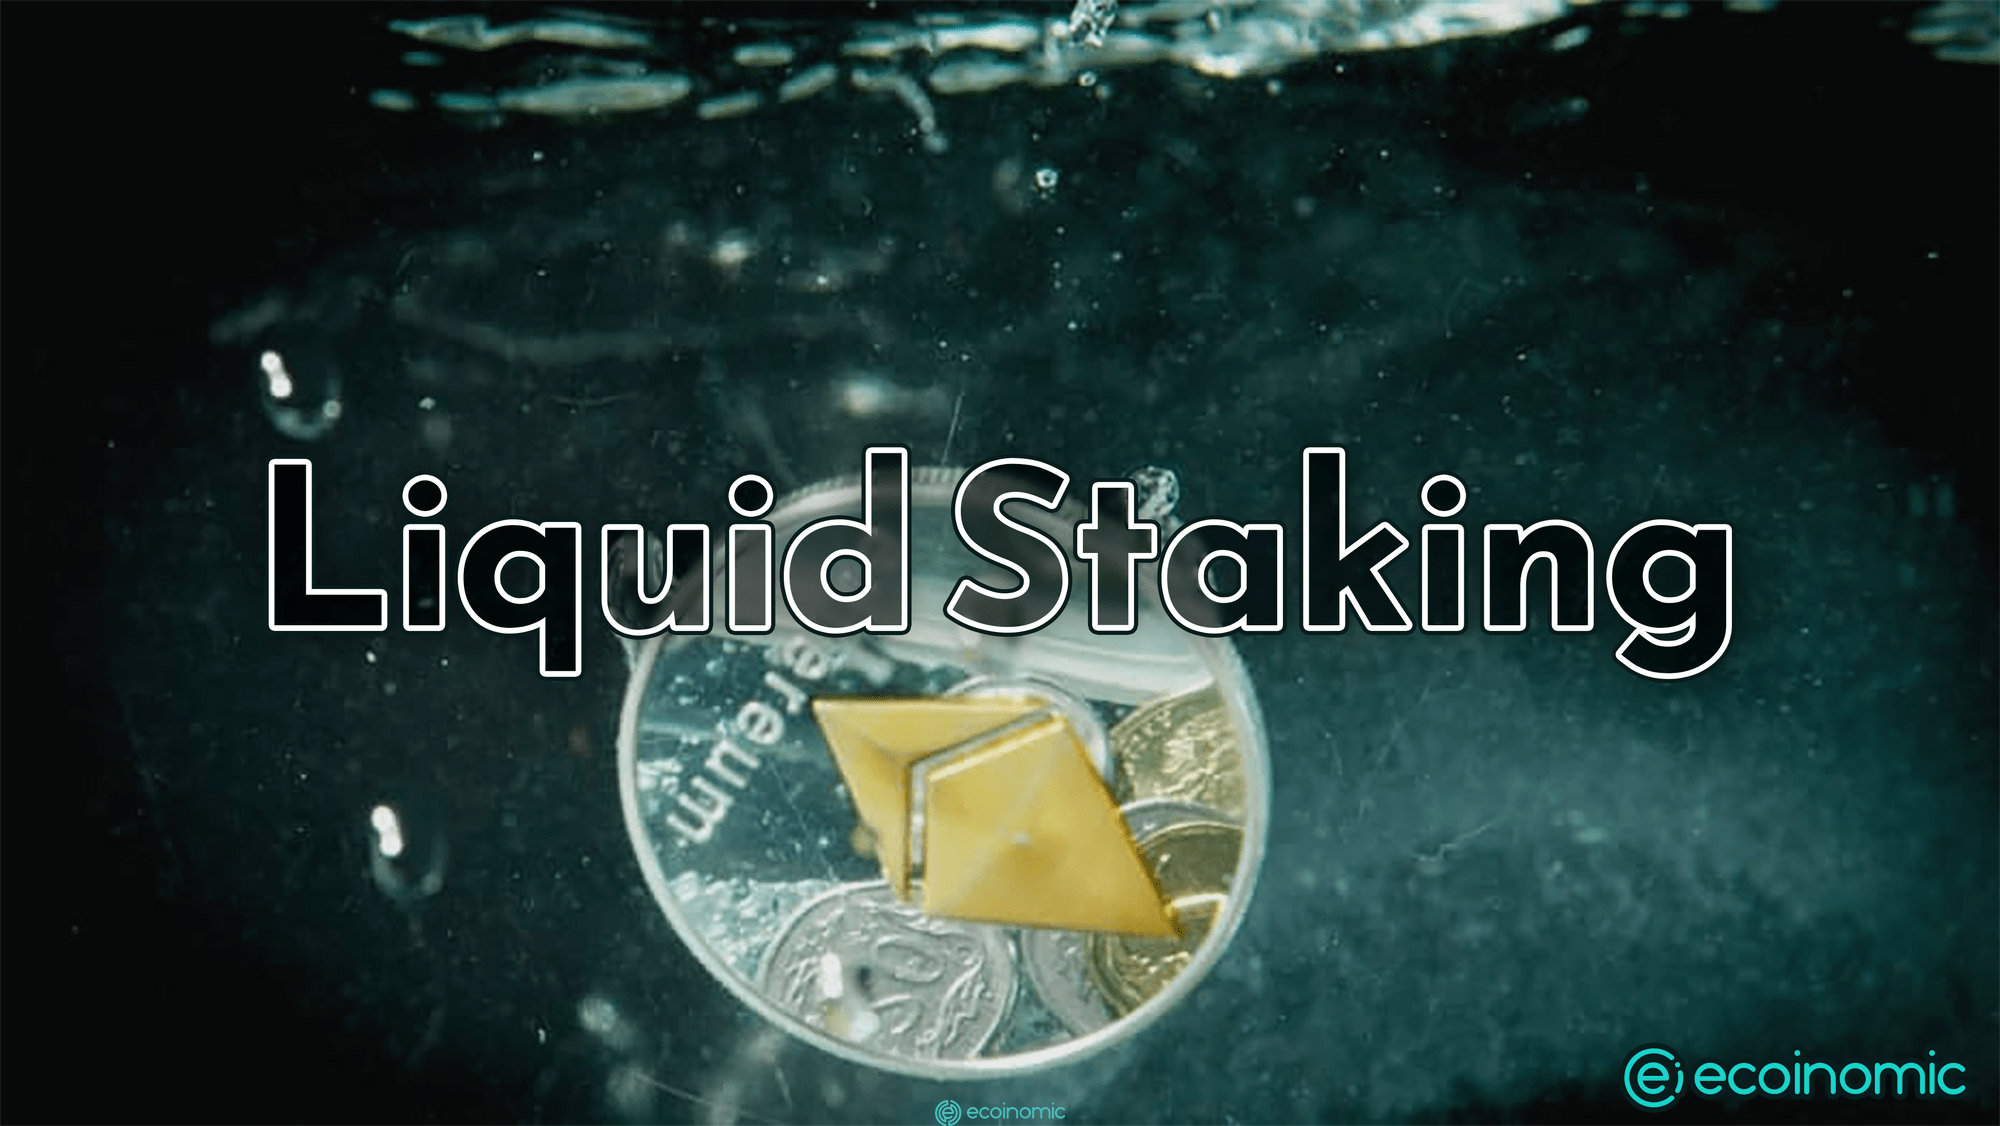 Liquid staking